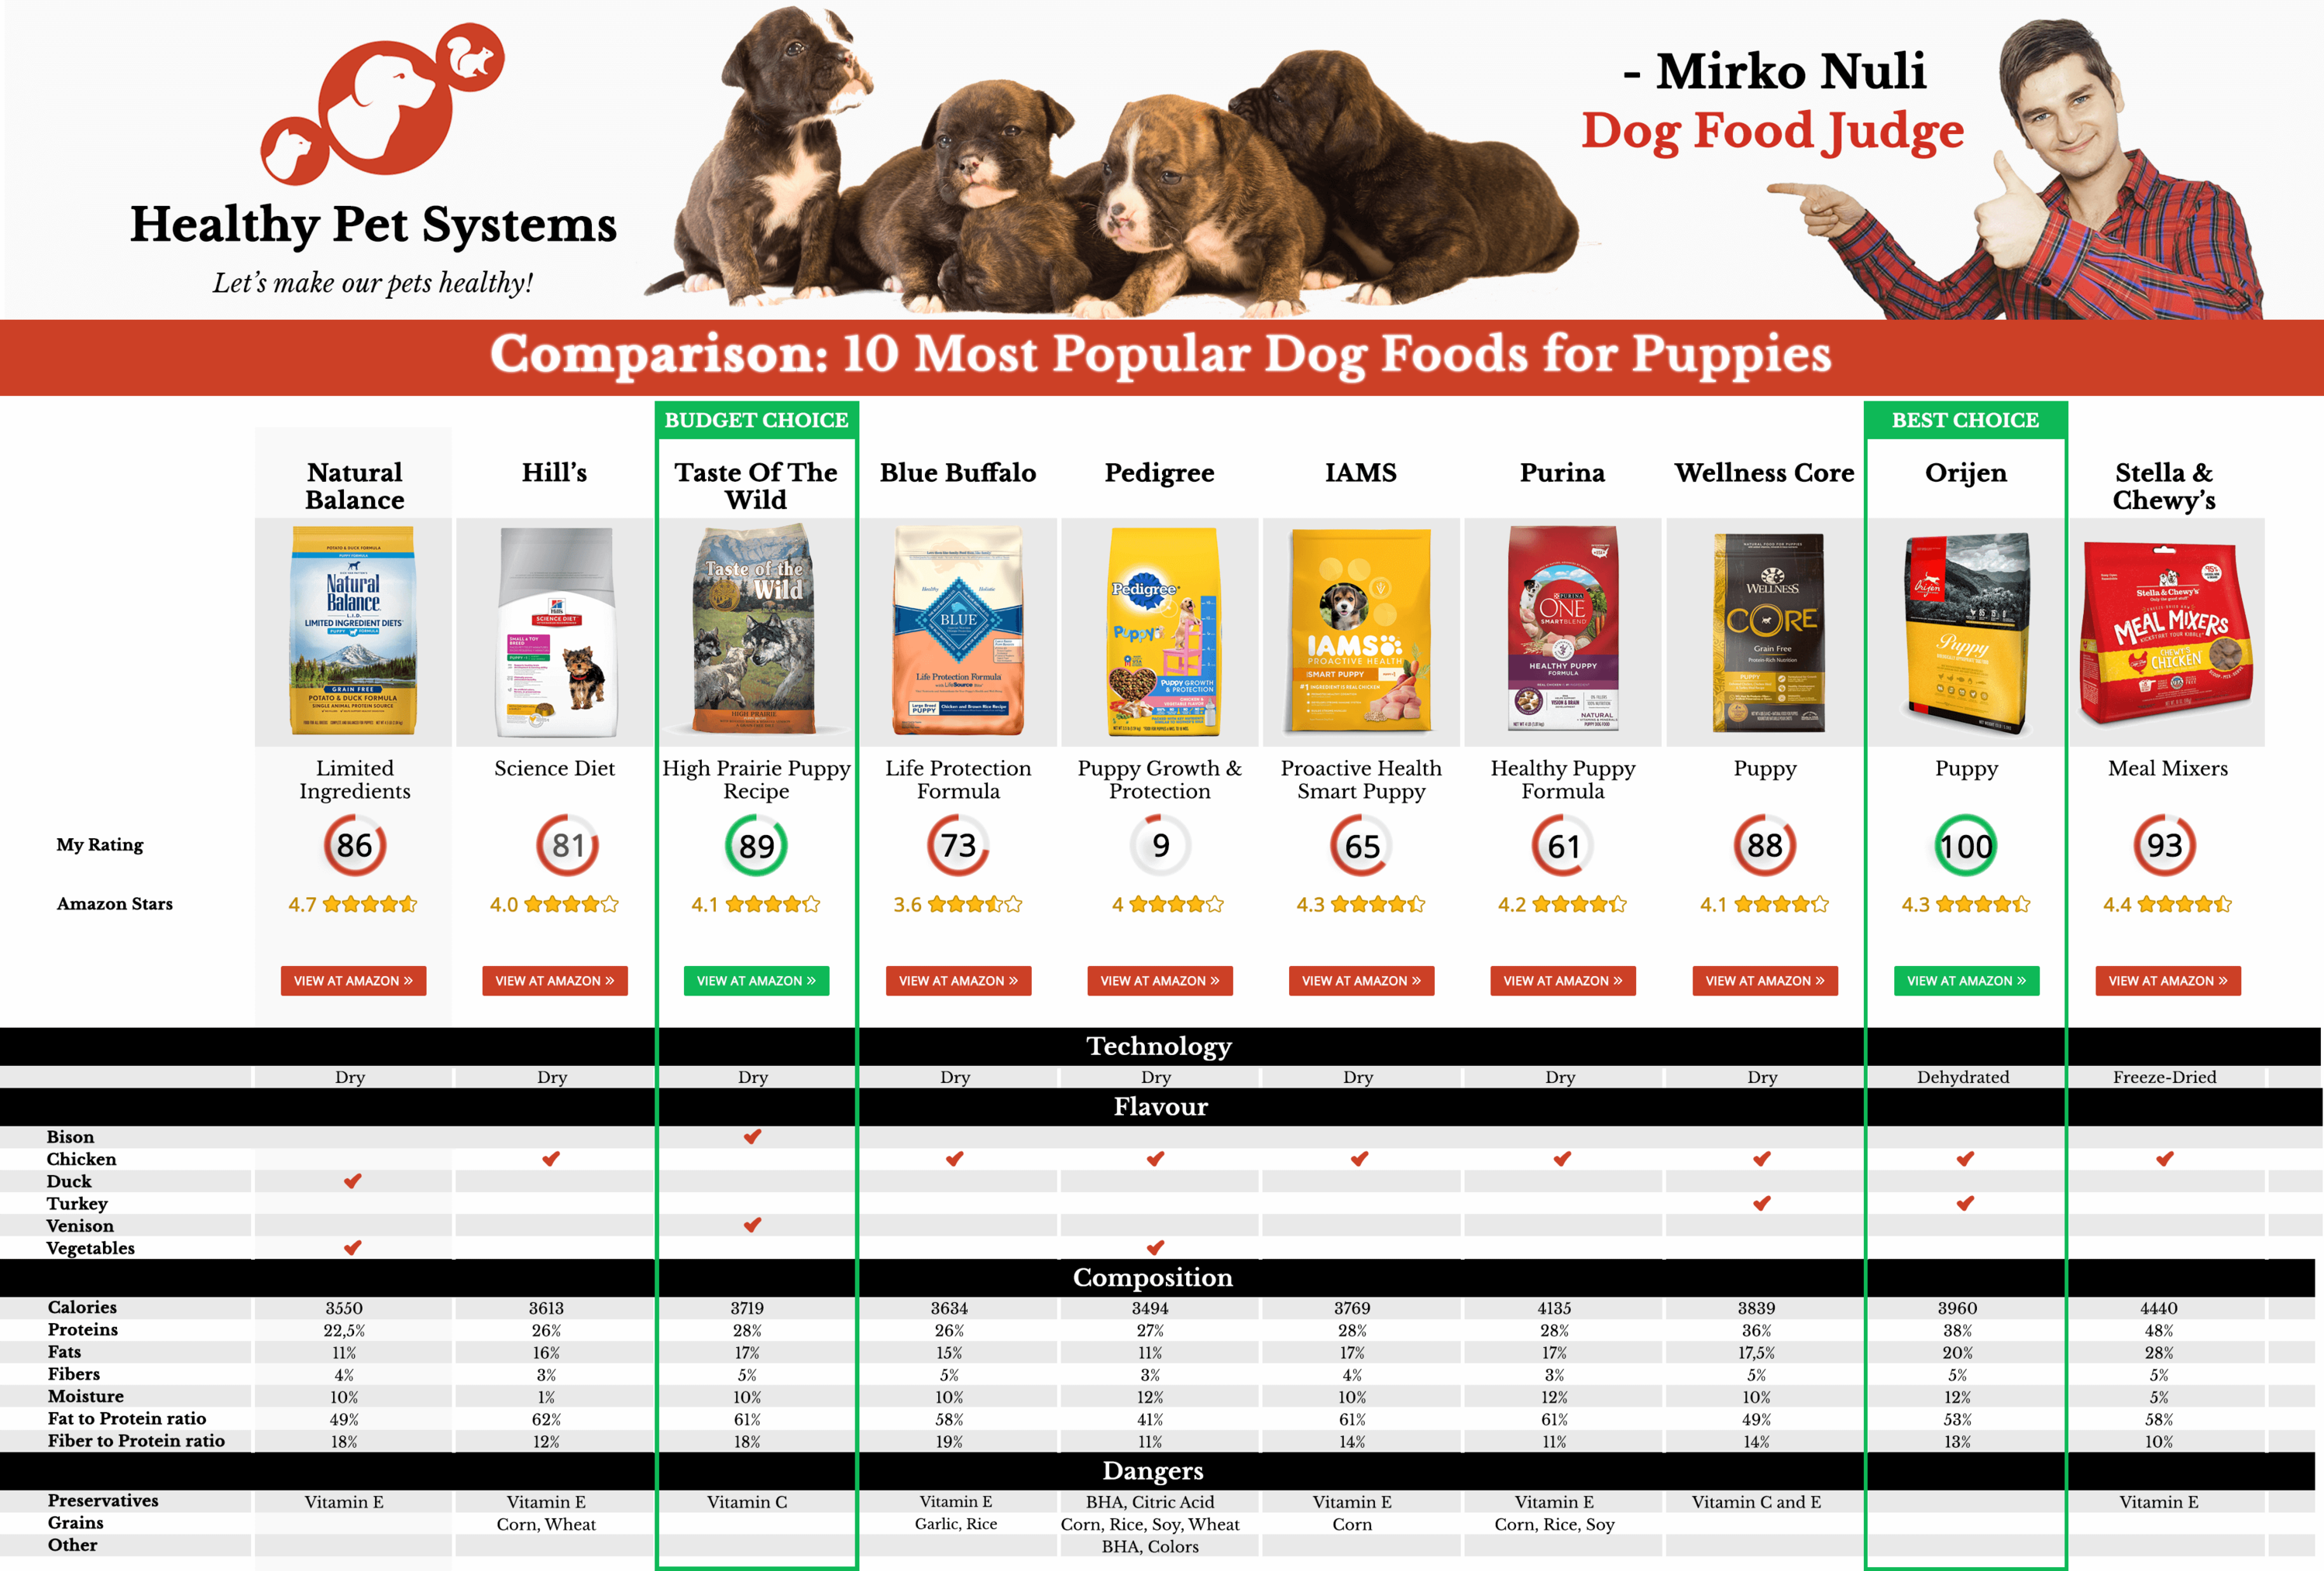 Comparison: Top 10 Foods for Labrador Retriever by Dog Food Judge Mirko Nuli